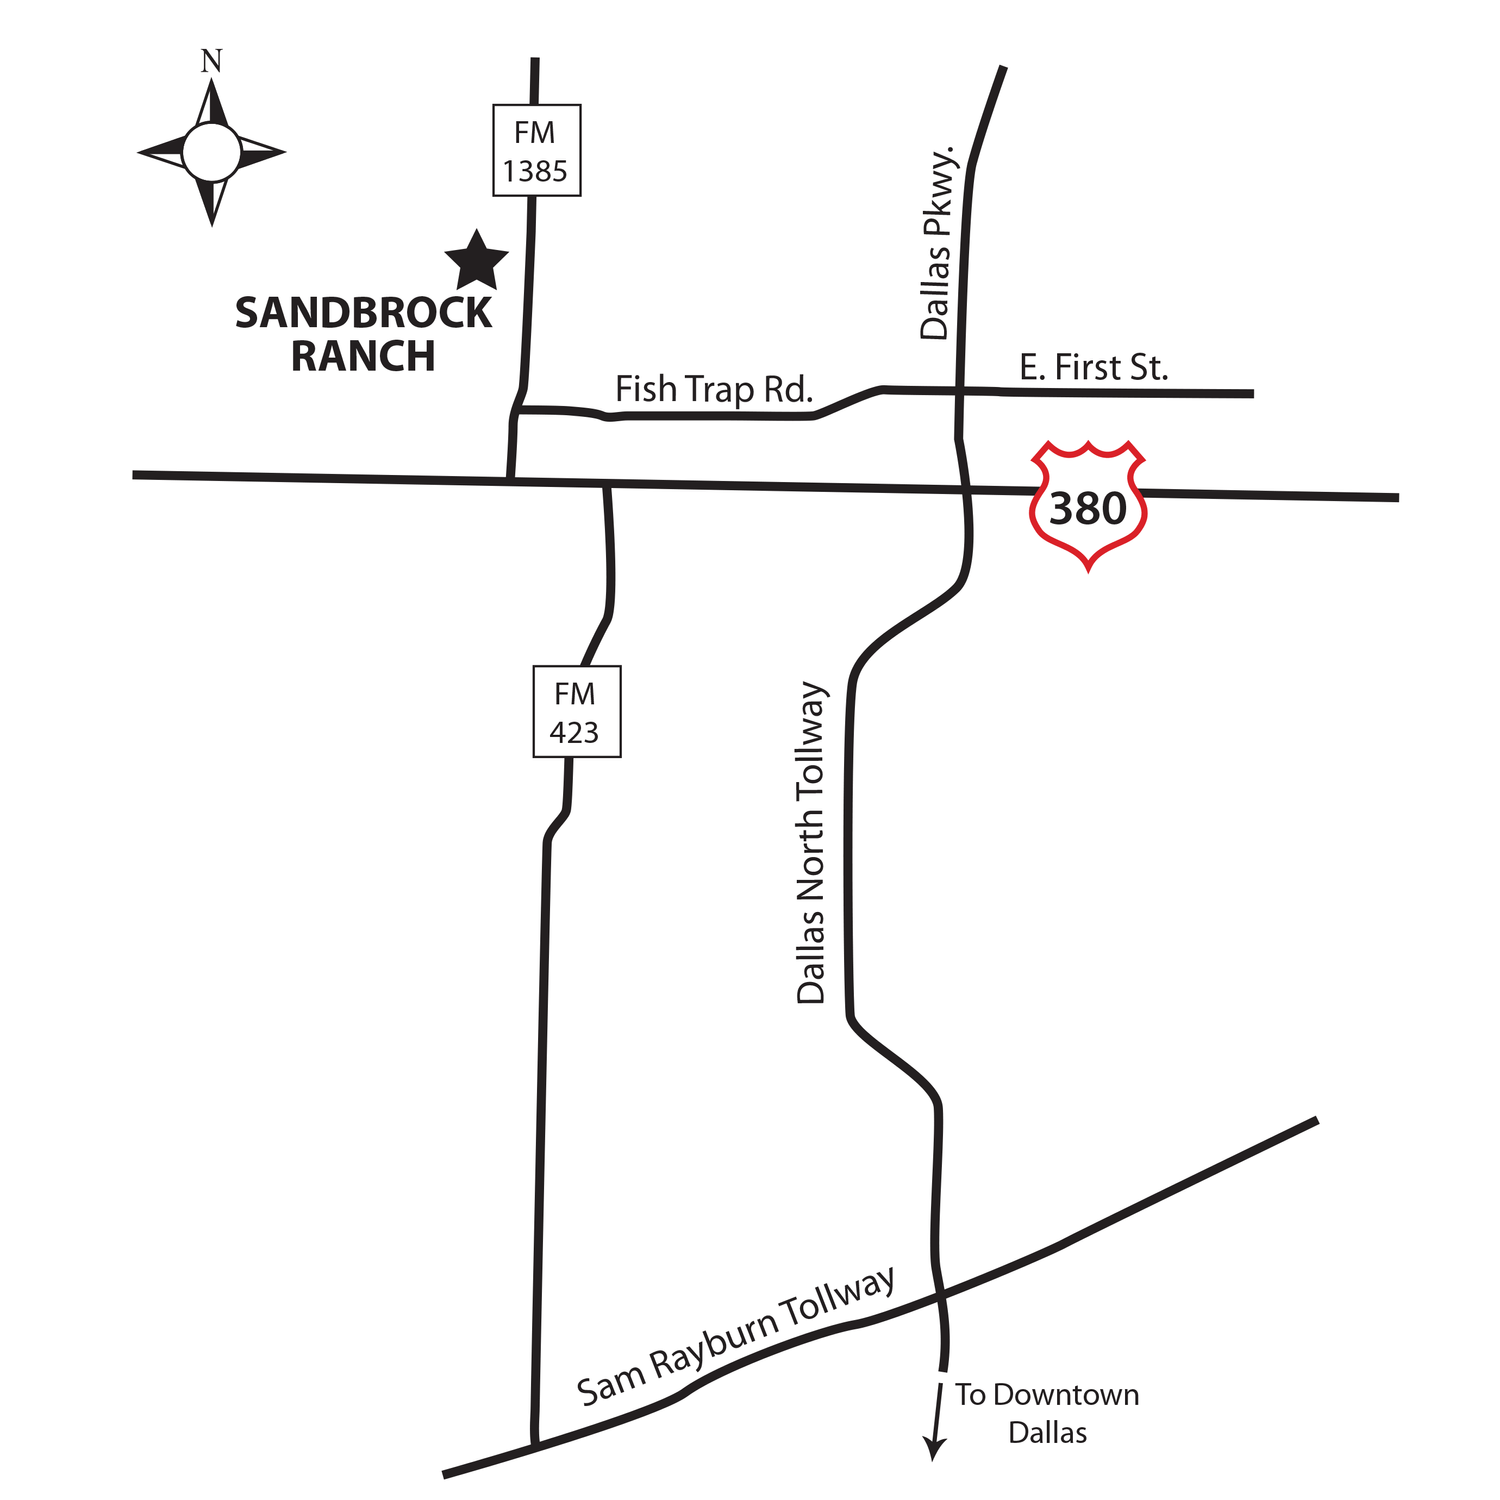 Sandbrock Ranch building at 1713 Sandbrock Drive, Aubrey, TX 76227